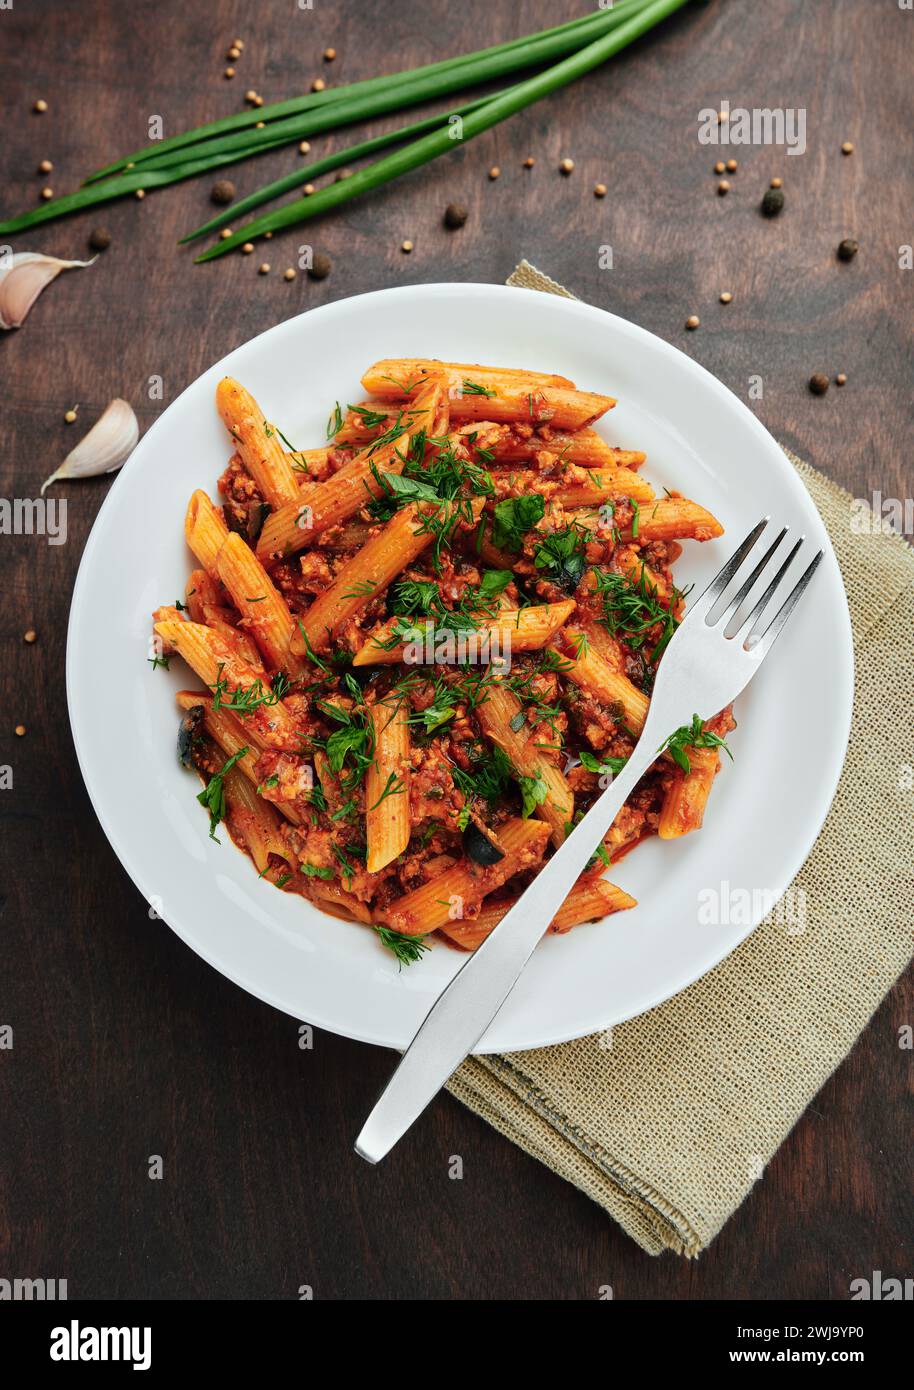 Cucina tradizionale italiana: Gustosa pasta con salsa bolognese. Deliziosi maccheroni (penne rigate) su un tavolo di legno ruvido. Vista dall'alto Foto Stock